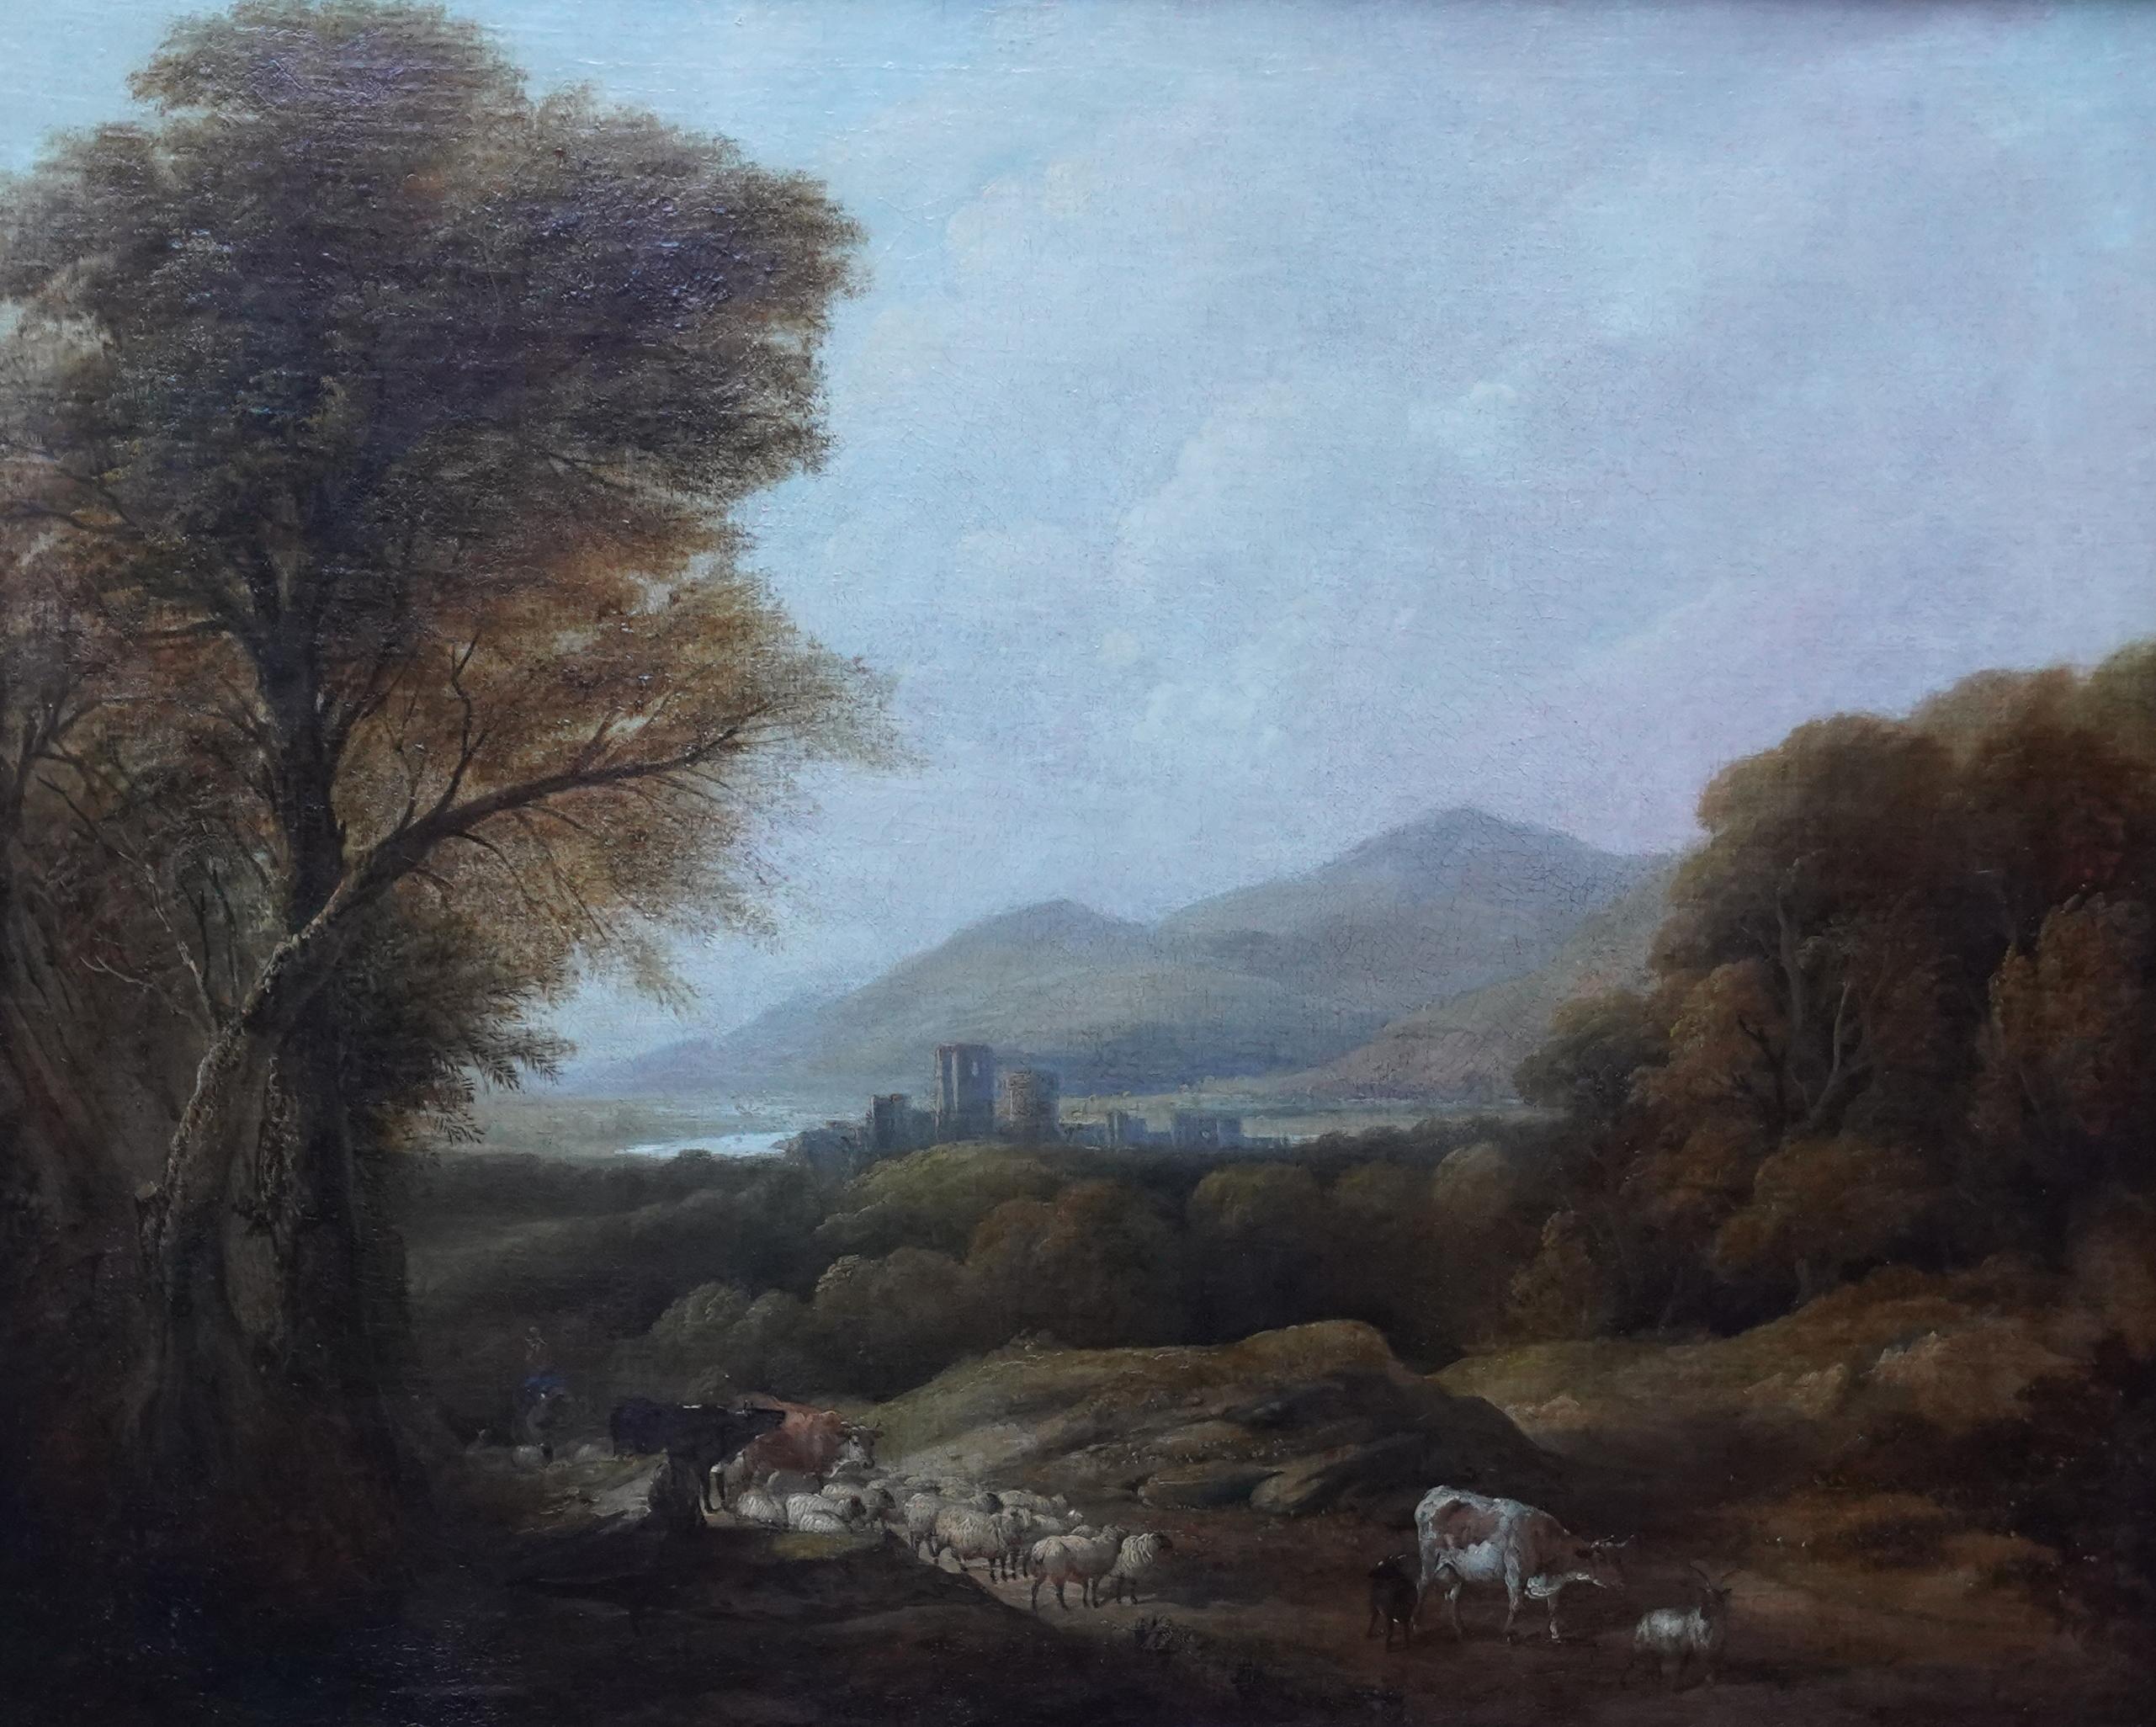 Rinder und Drover in einer Landschaft – britisches viktorianisches Ölgemälde – Painting von Henry Jutsum 